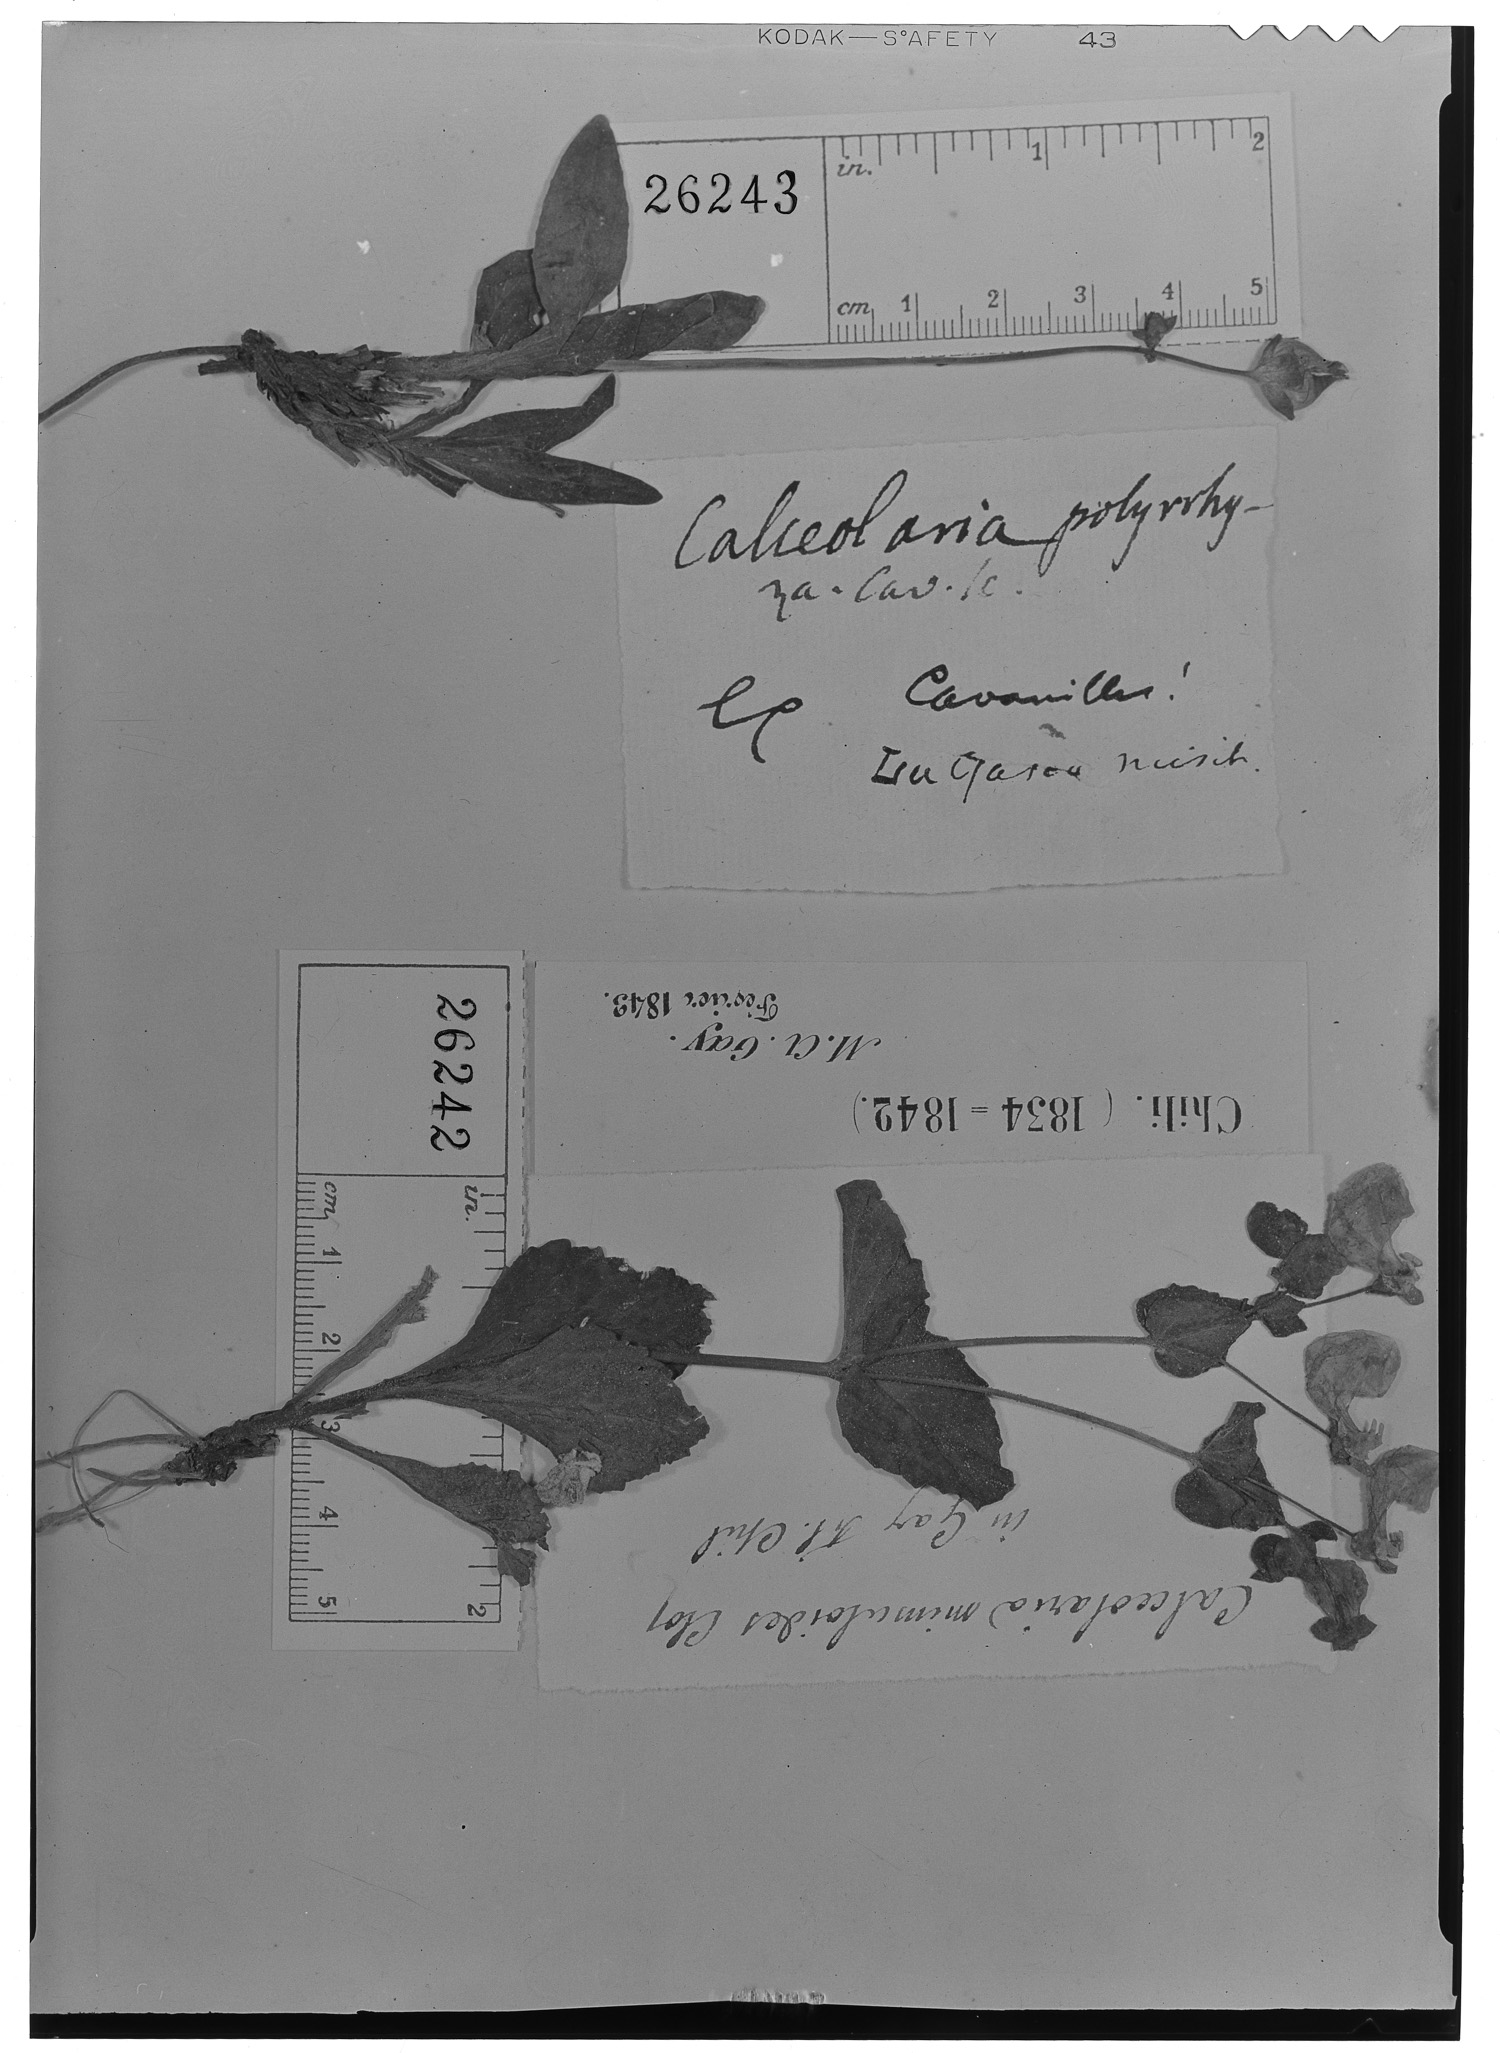 Calceolaria mimuloides image